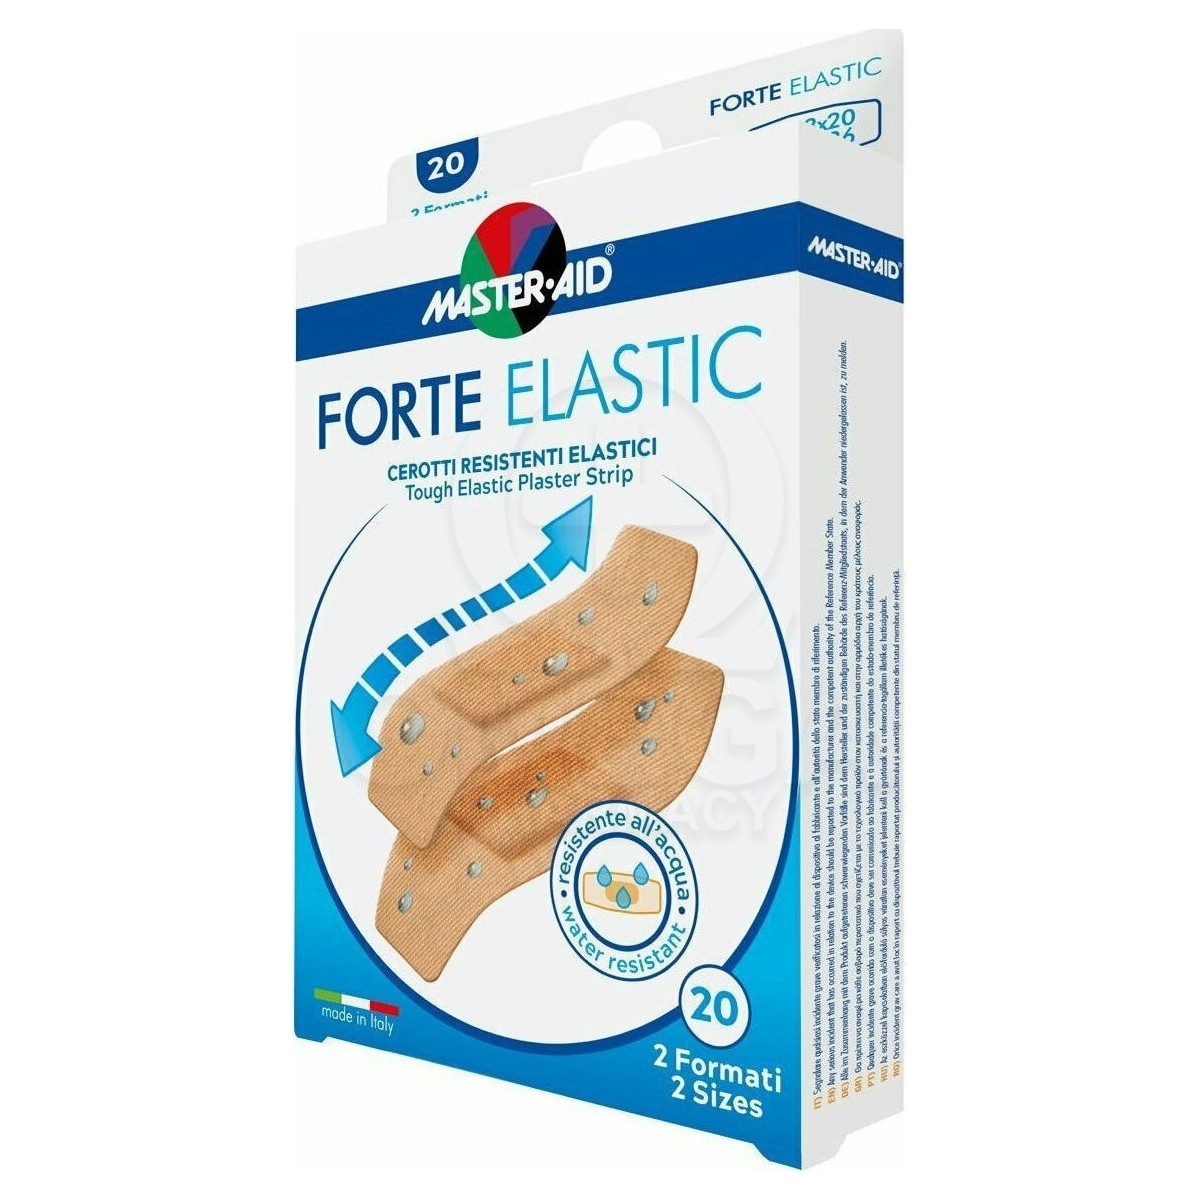 MASTER AID Forte Elastic Eλαστικά Αυτοκόλλητα Επιθέματα σε 2 Μεγέθη 20τμχ